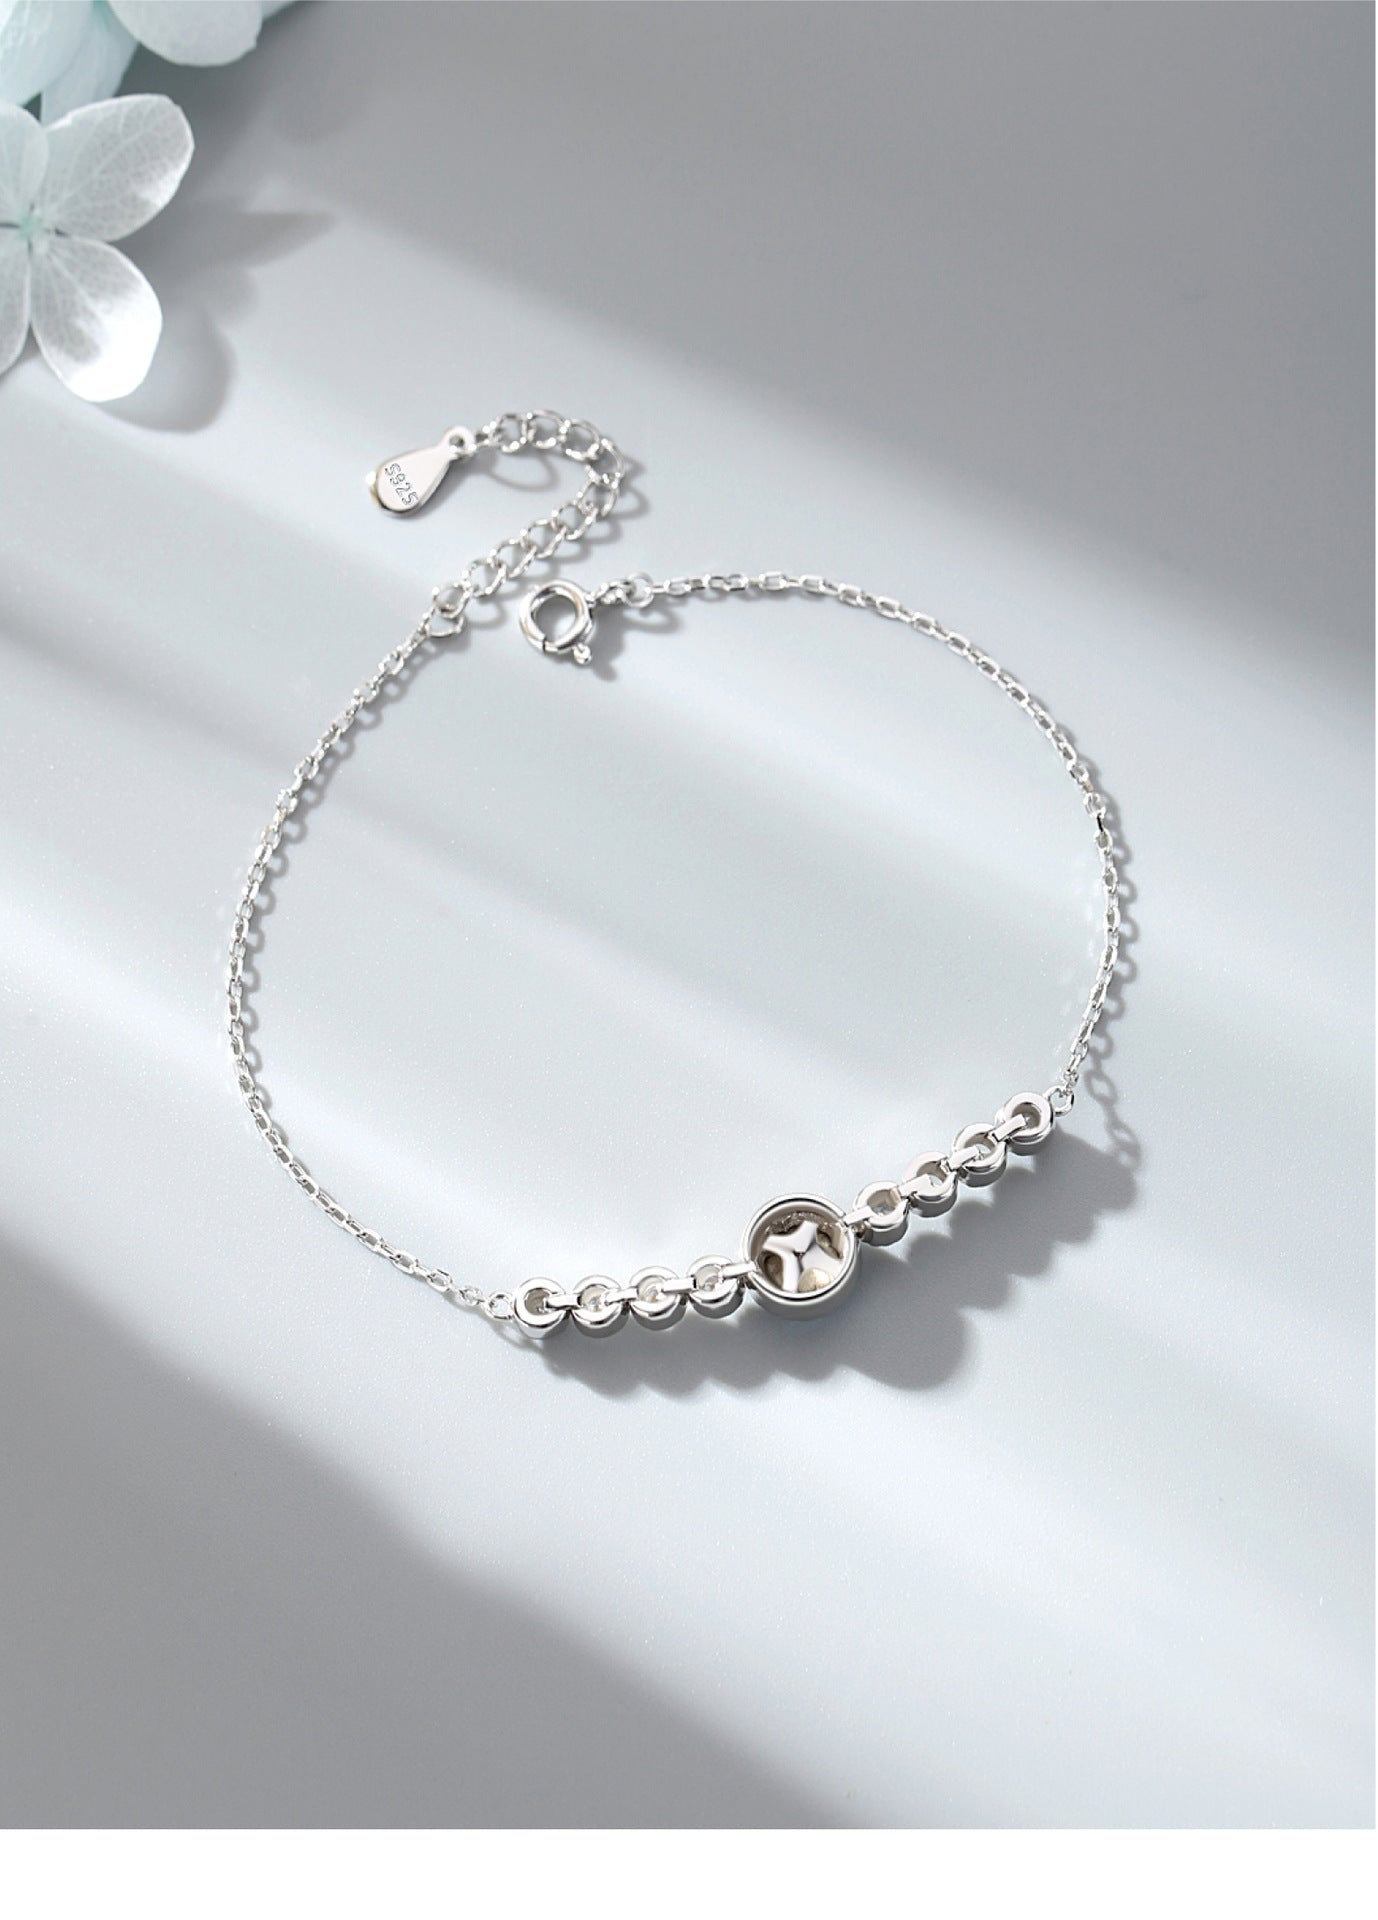 Romantic Luxury Crystal Sliver Bracelet for Women